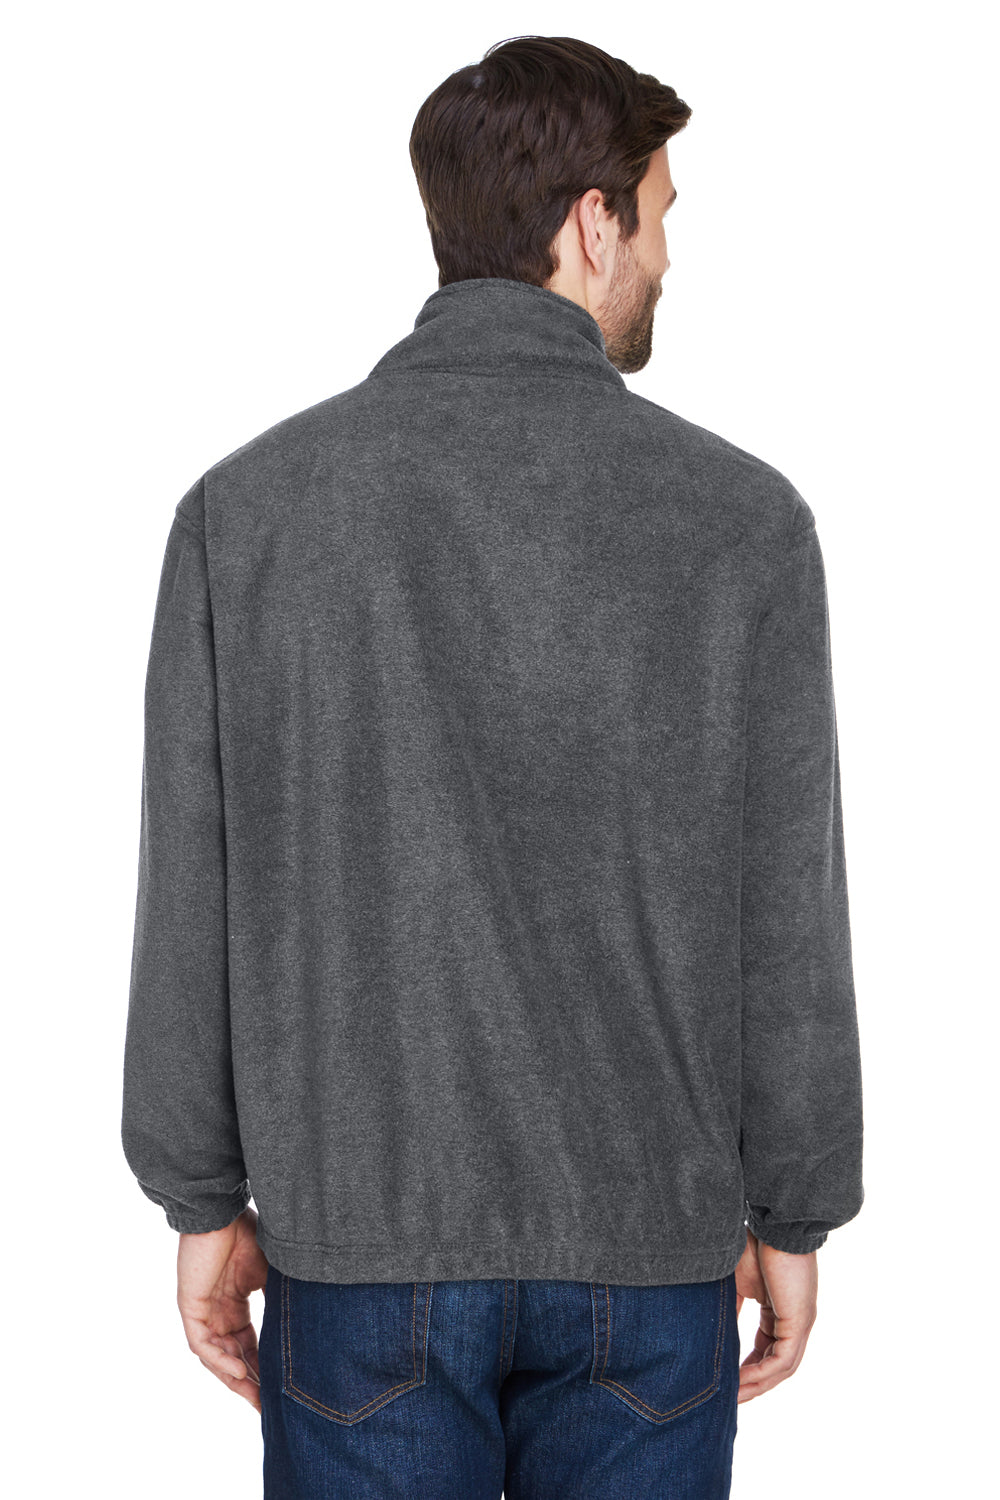 UltraClub 8480 Mens Iceberg 1/4 Zip Fleece Jacket Charcoal Grey Back